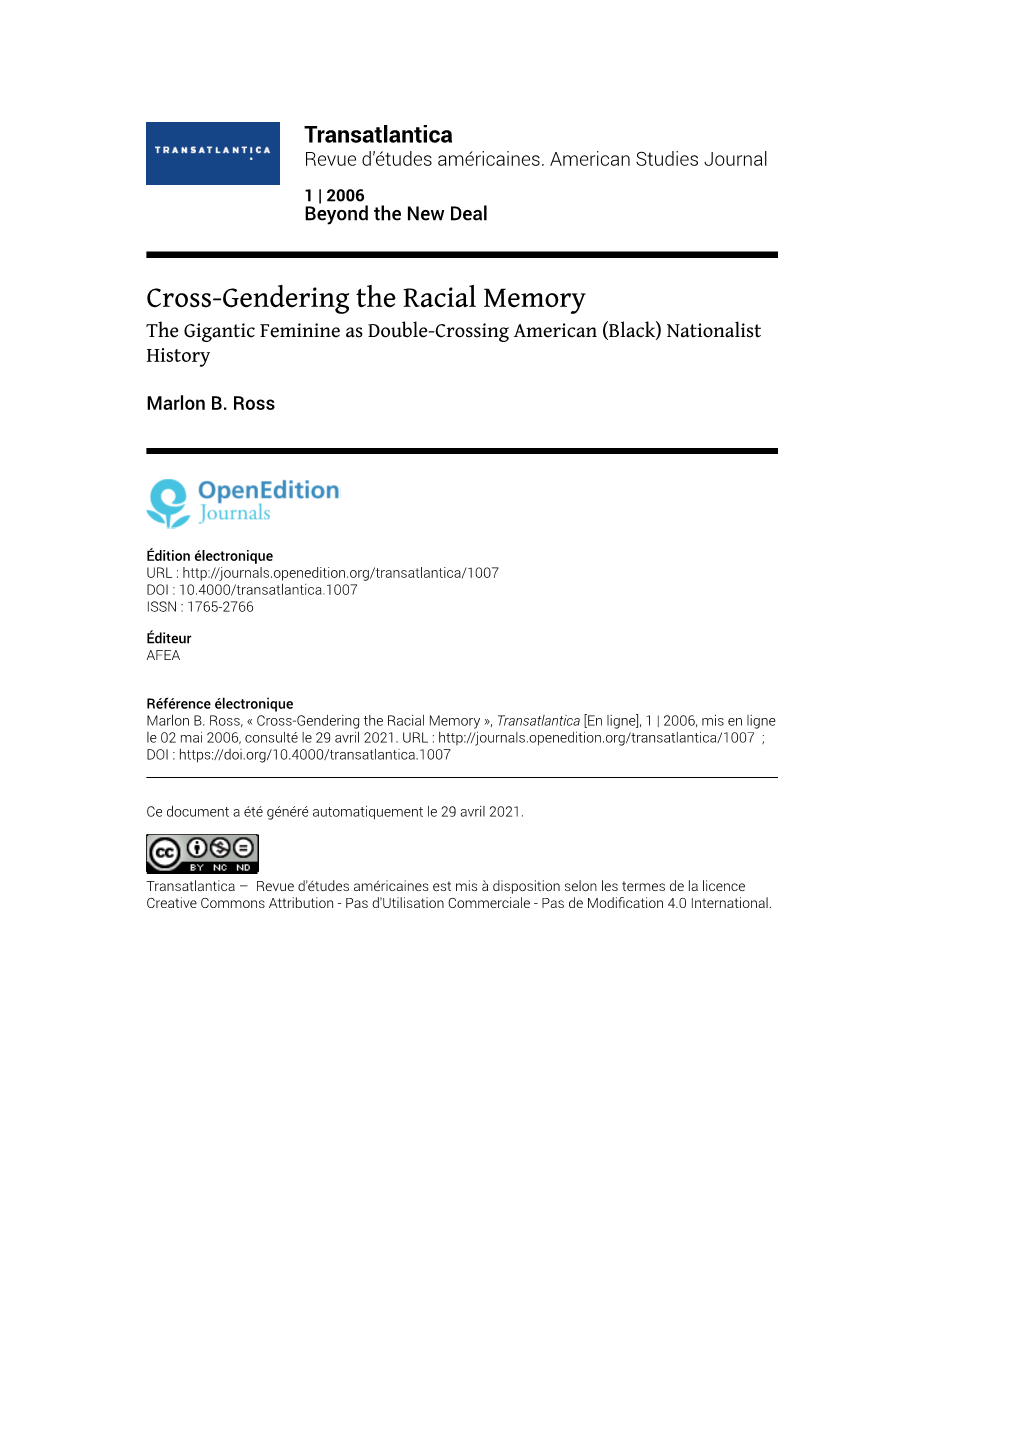 Transatlantica, 1 | 2006 Cross-Gendering the Racial Memory 2